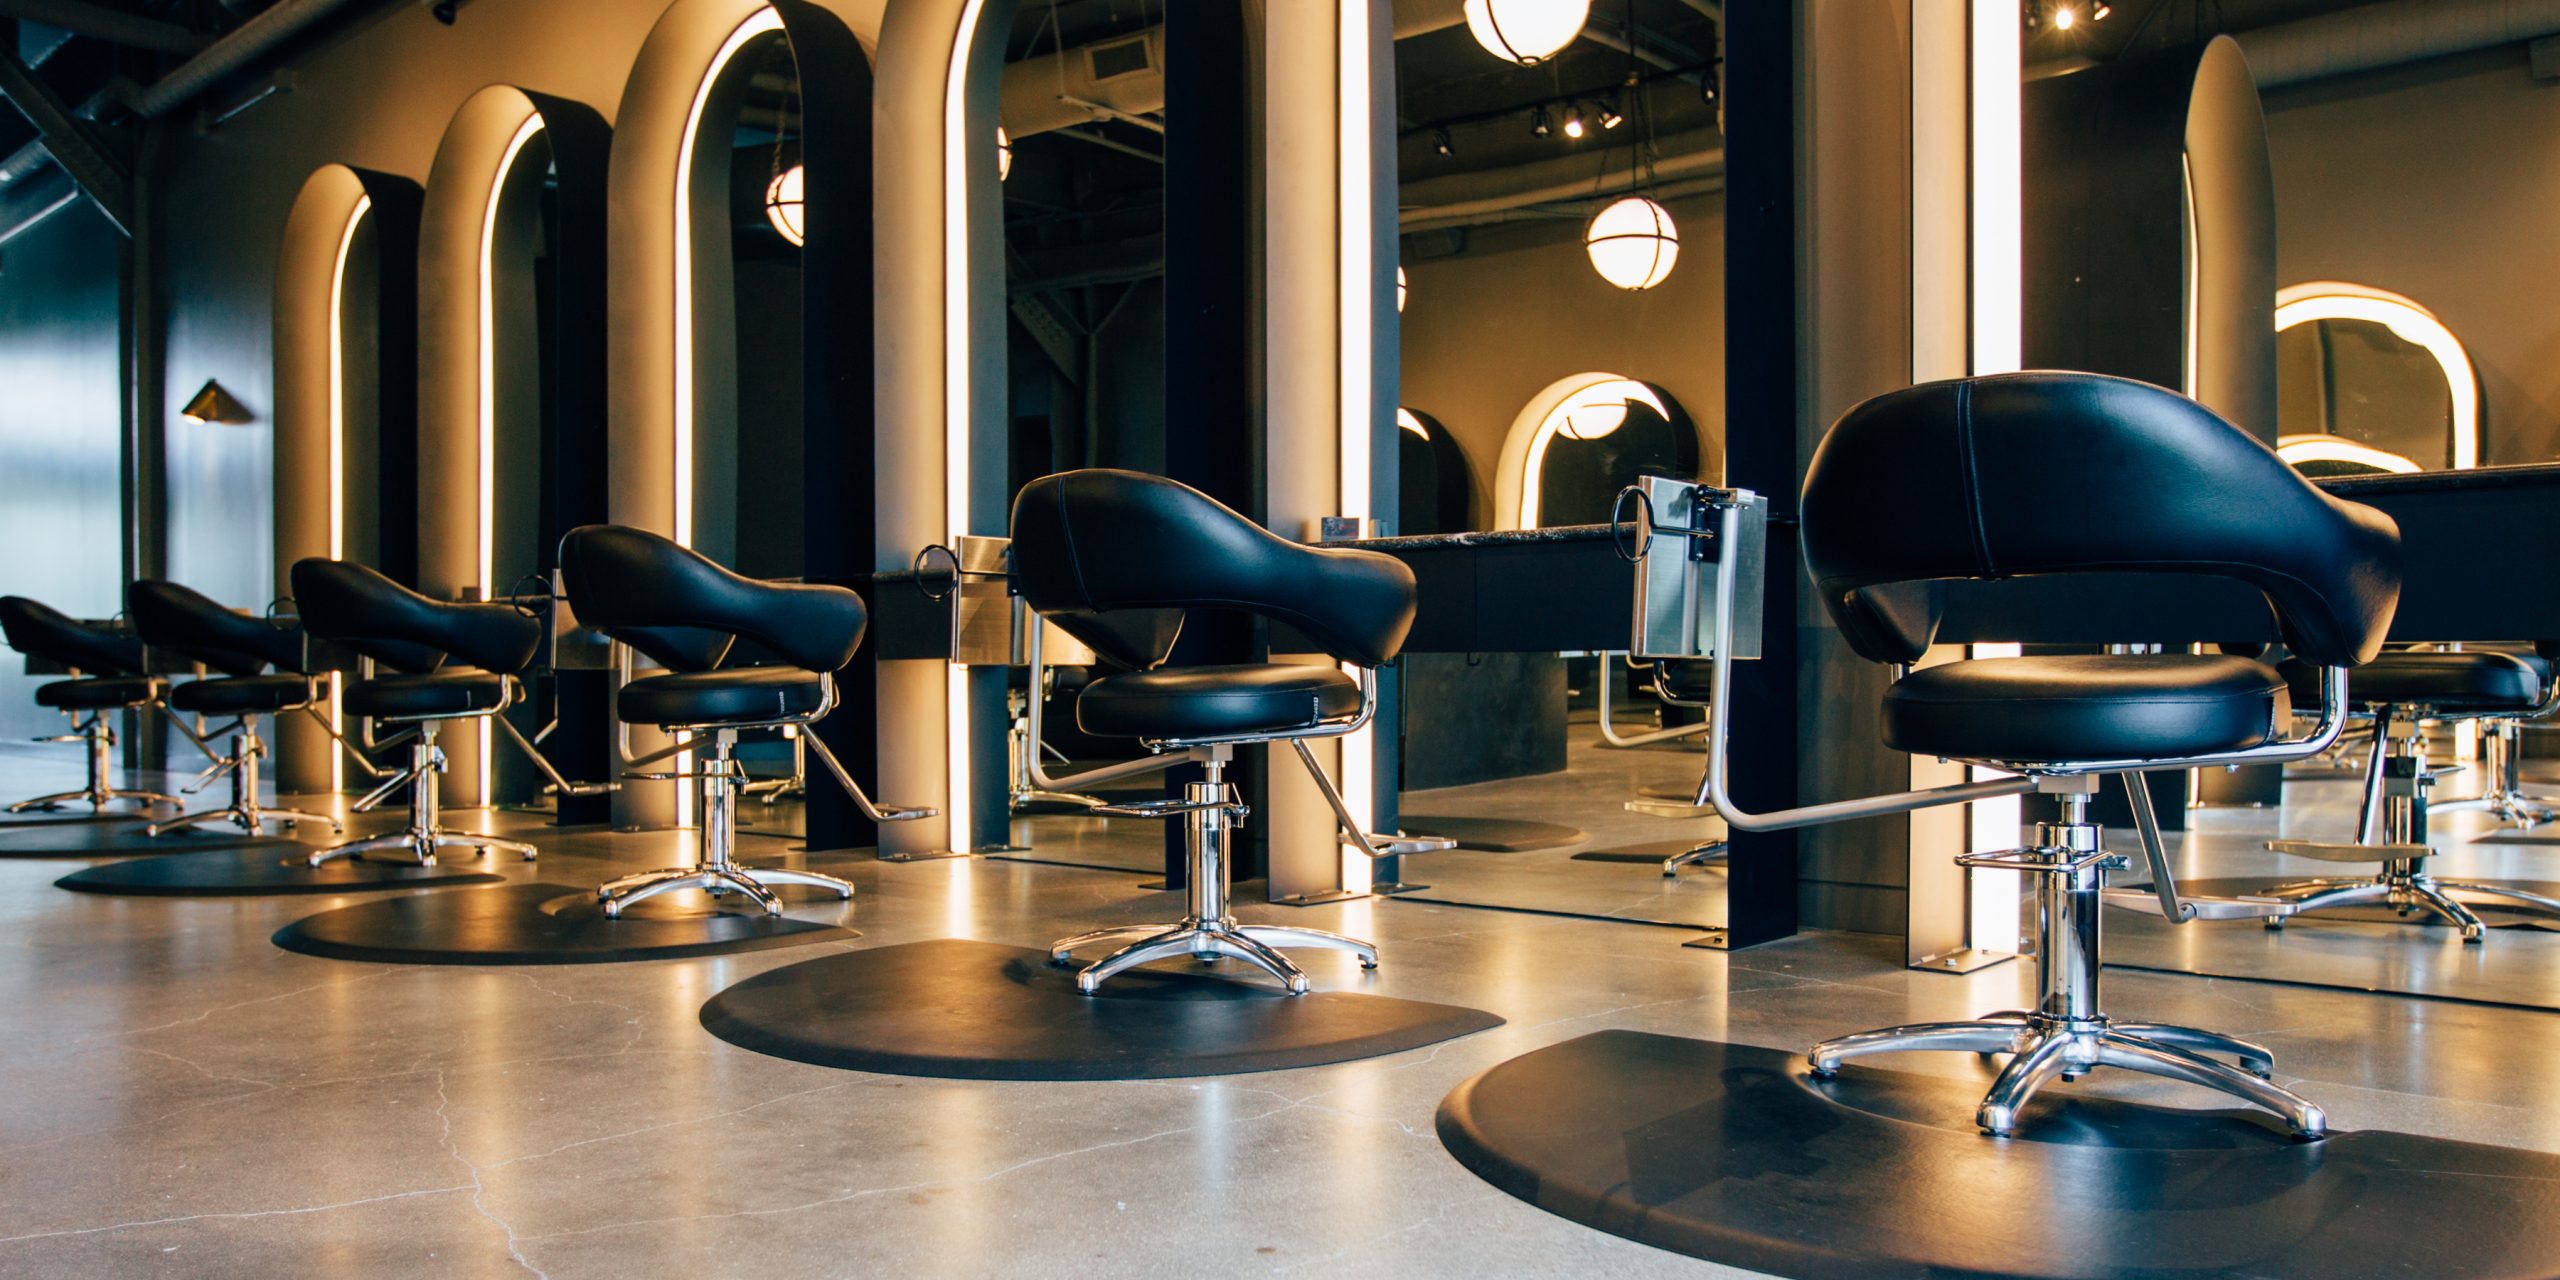 Salon tóc - ý tưởng kinh doanh với số vốn lớn hơn 50 triệu